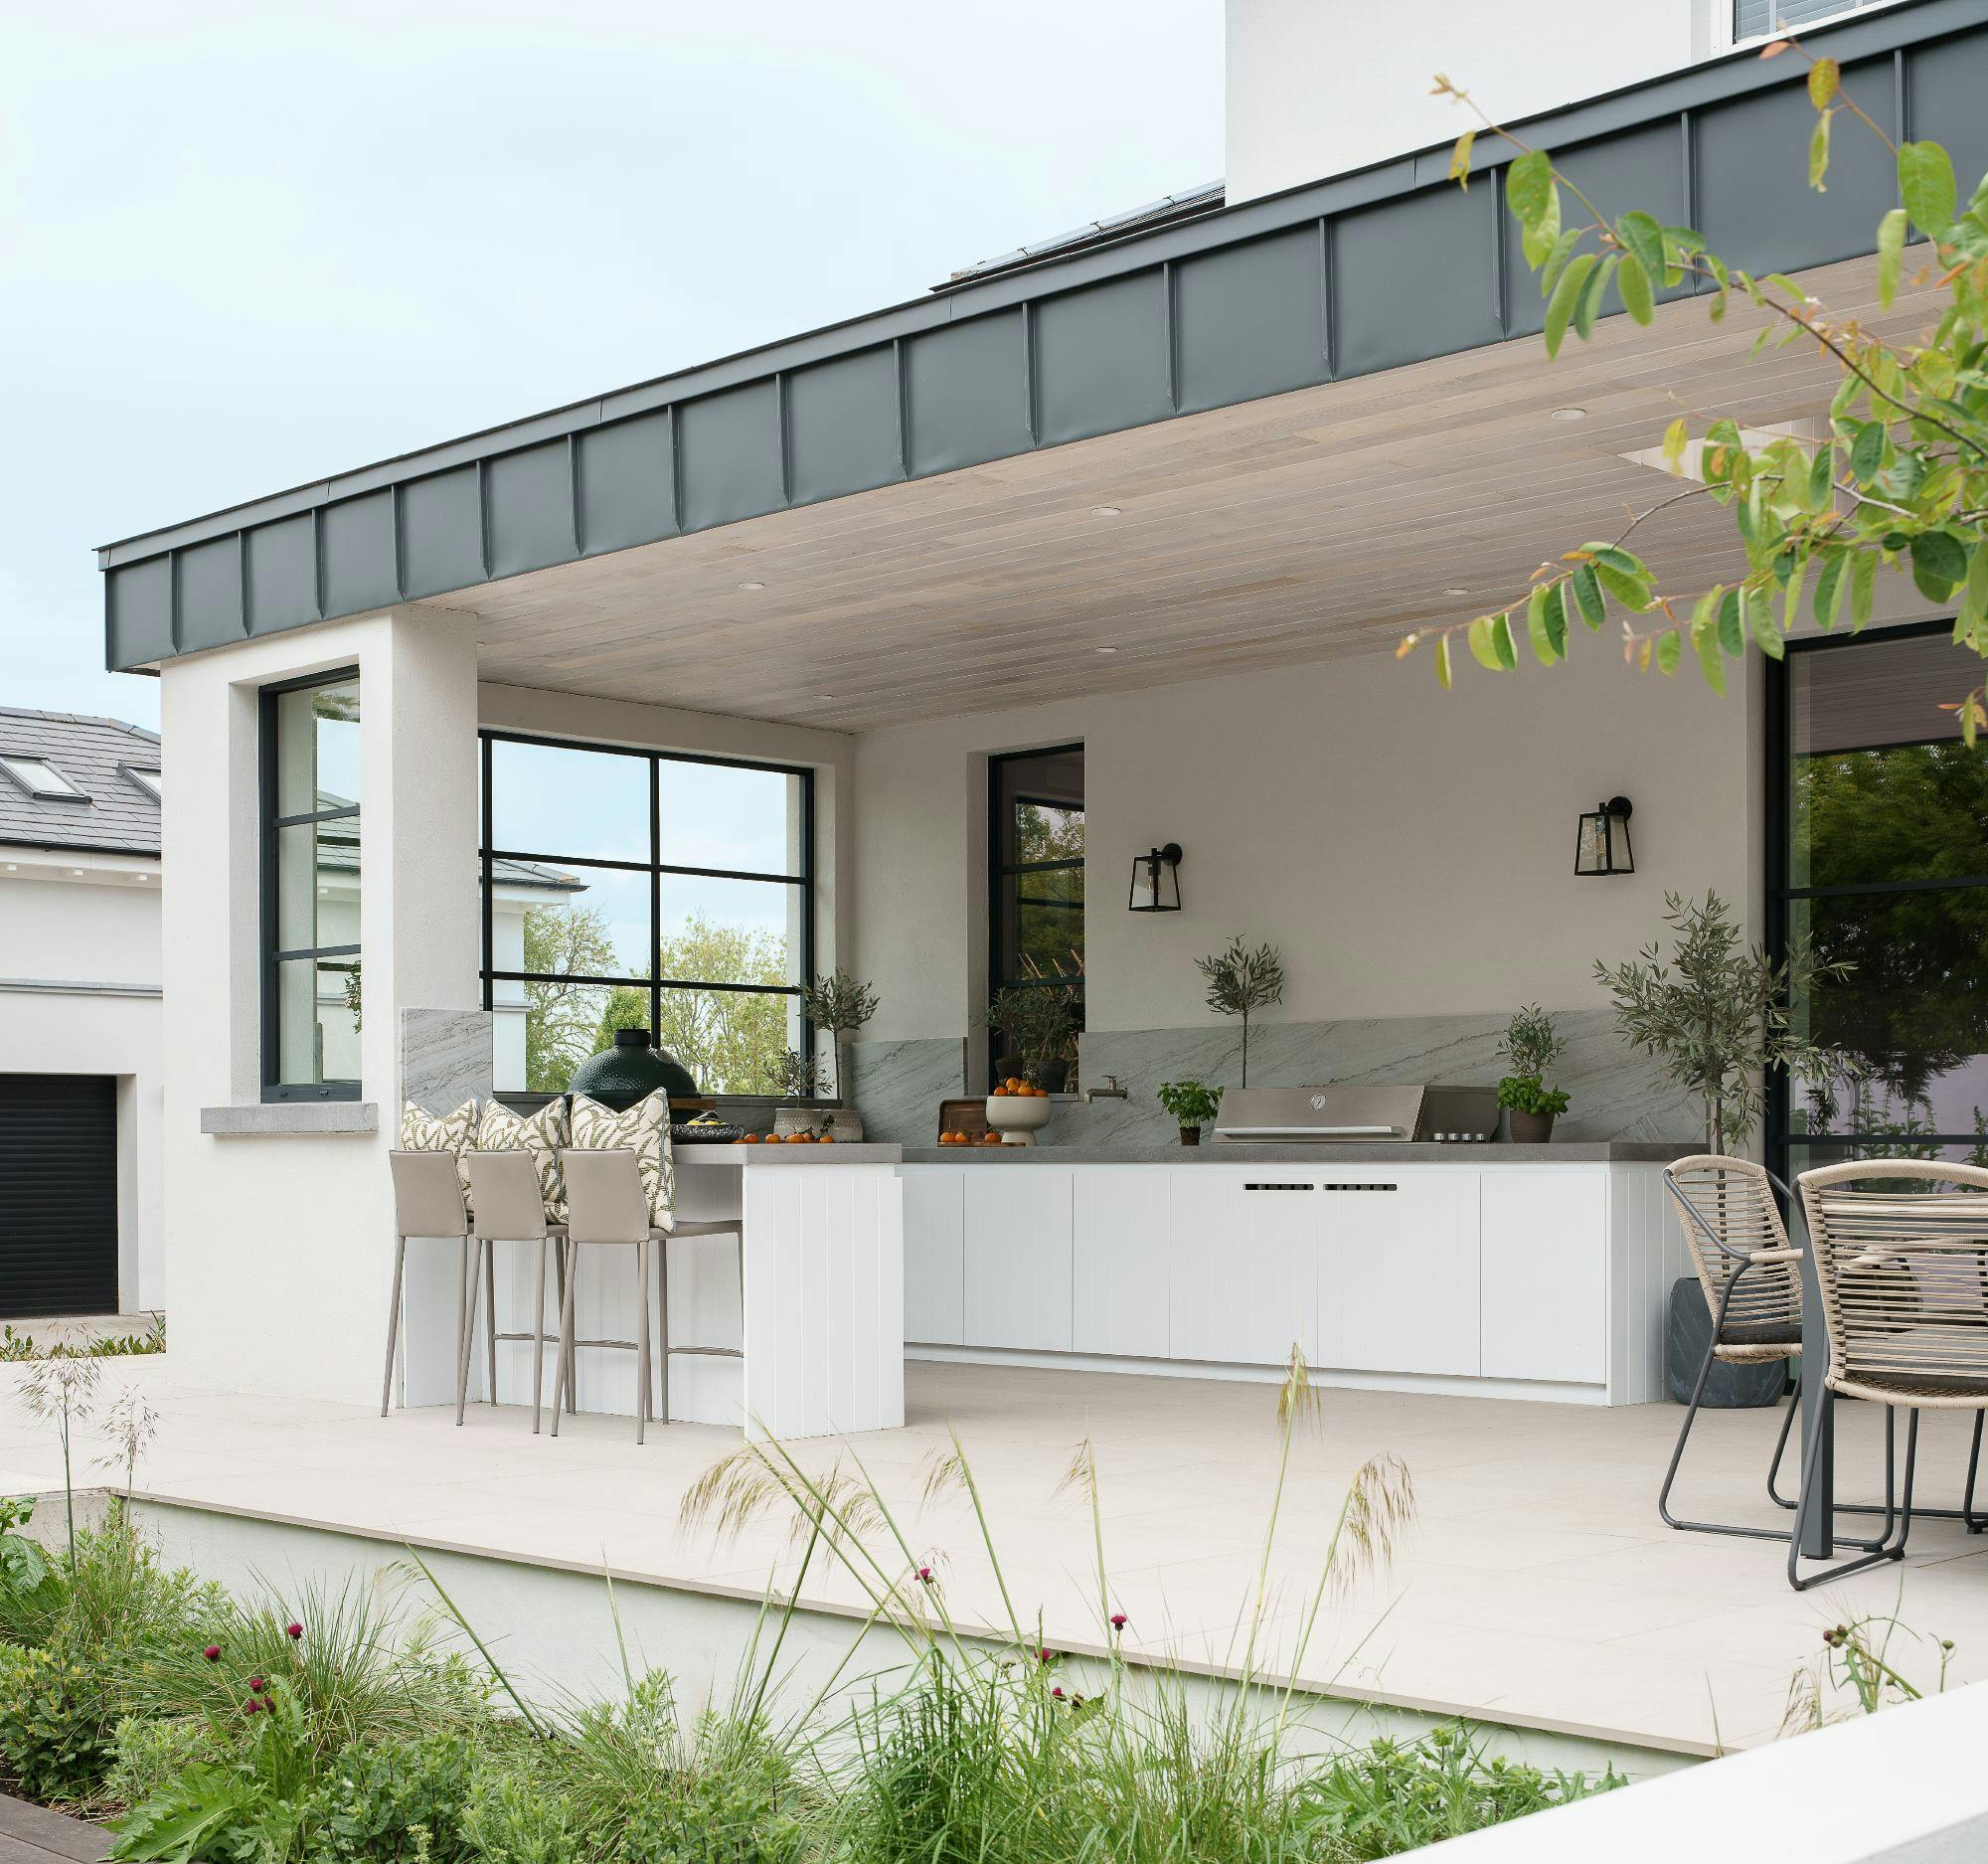 Imagen número 80 de Una encimera Carbon Neutral para una casa sostenible en la que se funden interior y exterior